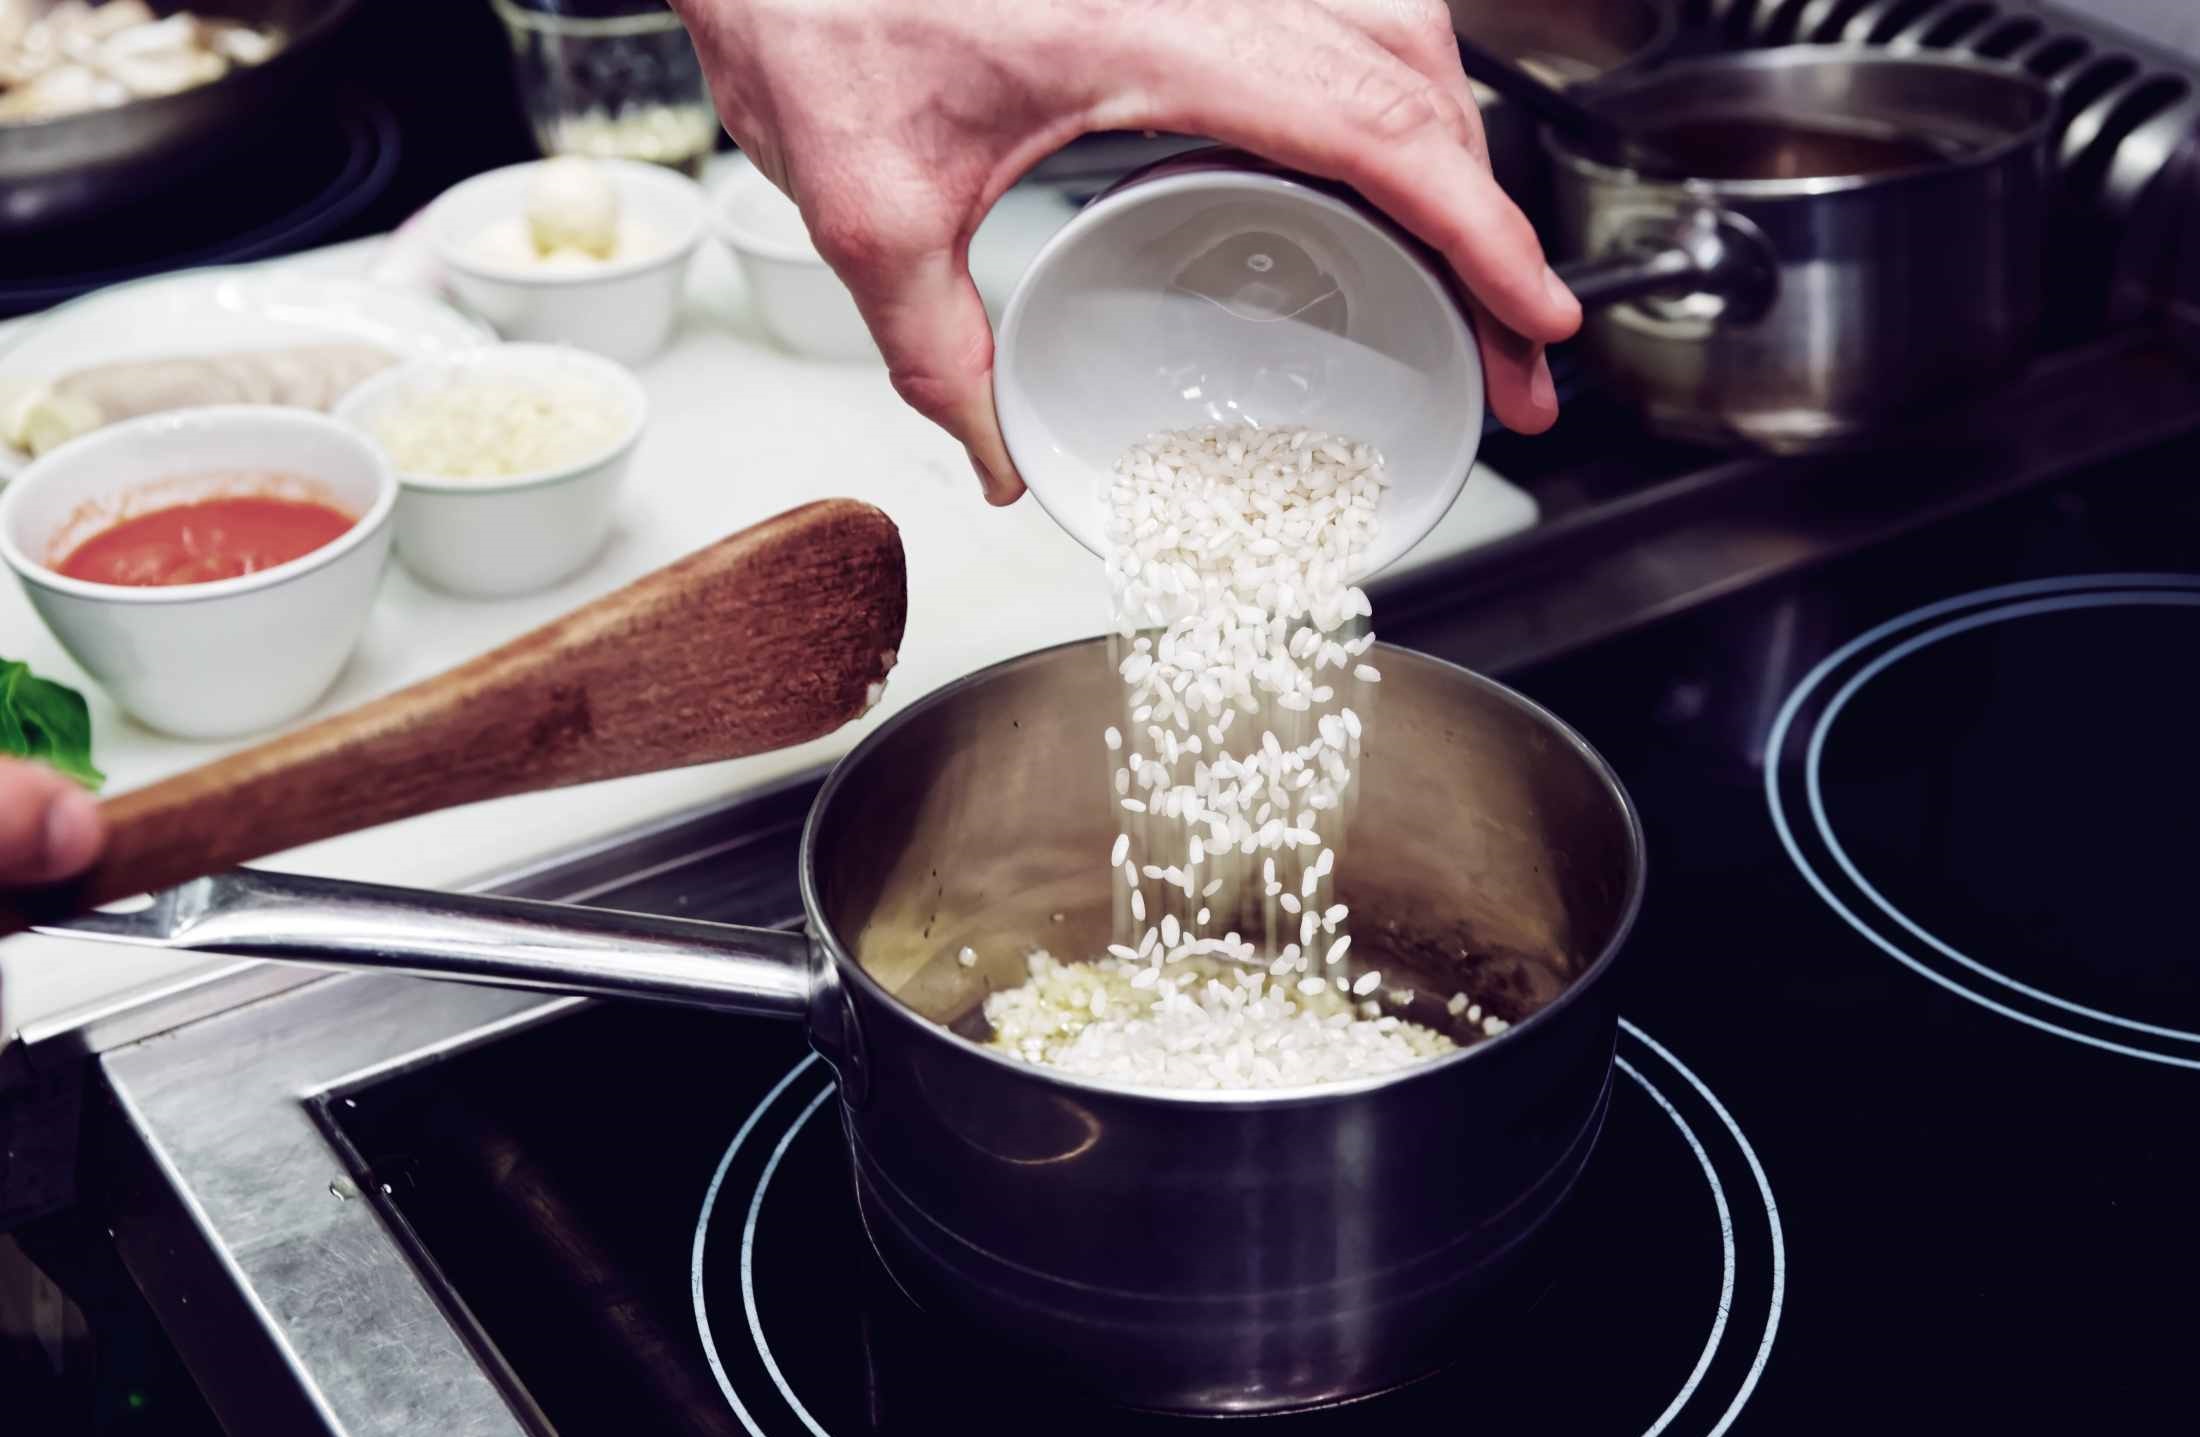 شور شدن برنج - از بین بردن شوری غذا